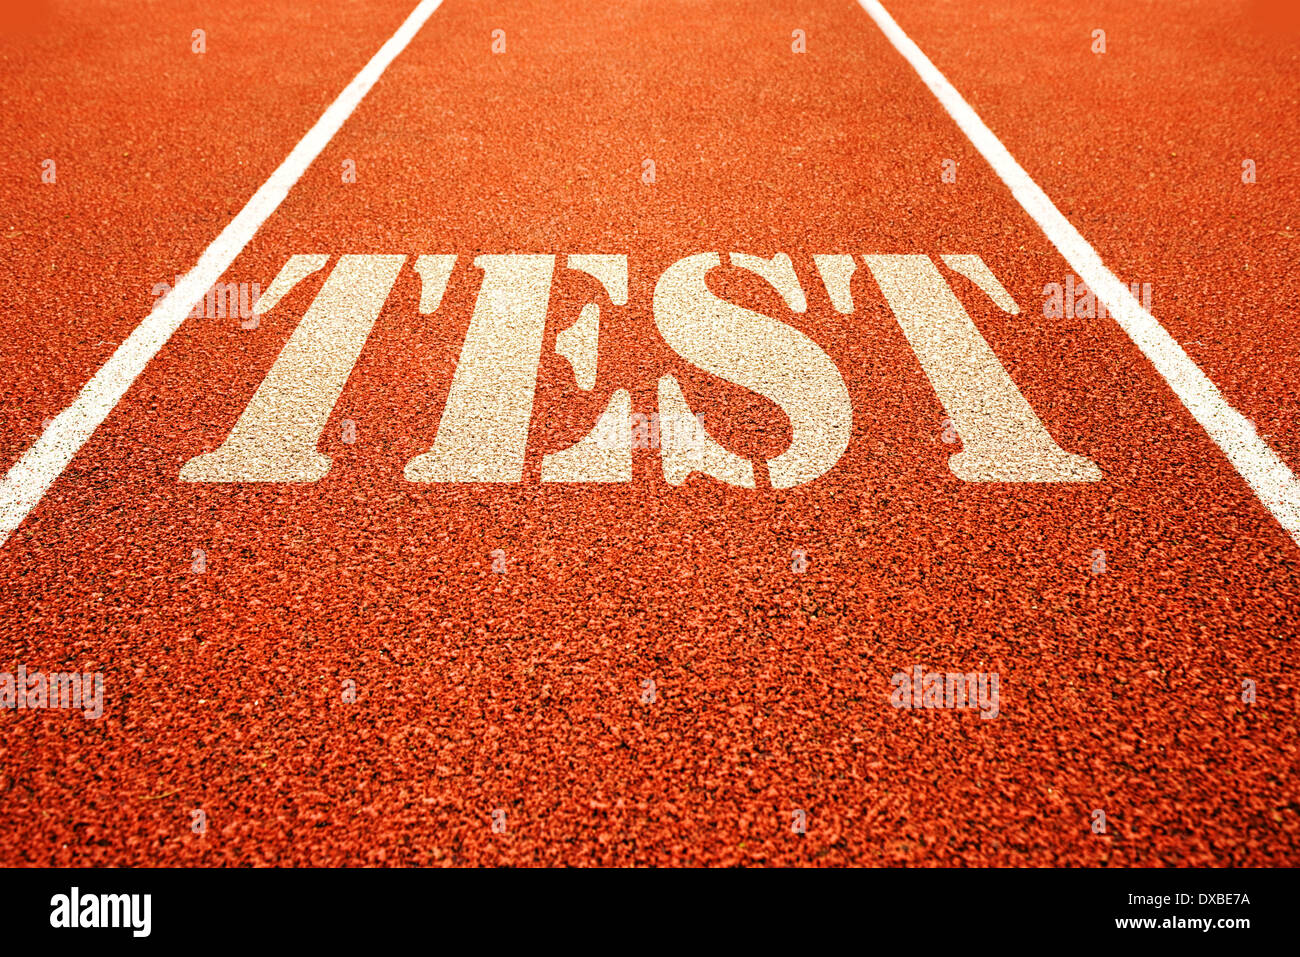 Test sulla corsa atletica via. Sport concettuale dell'immagine. Foto Stock